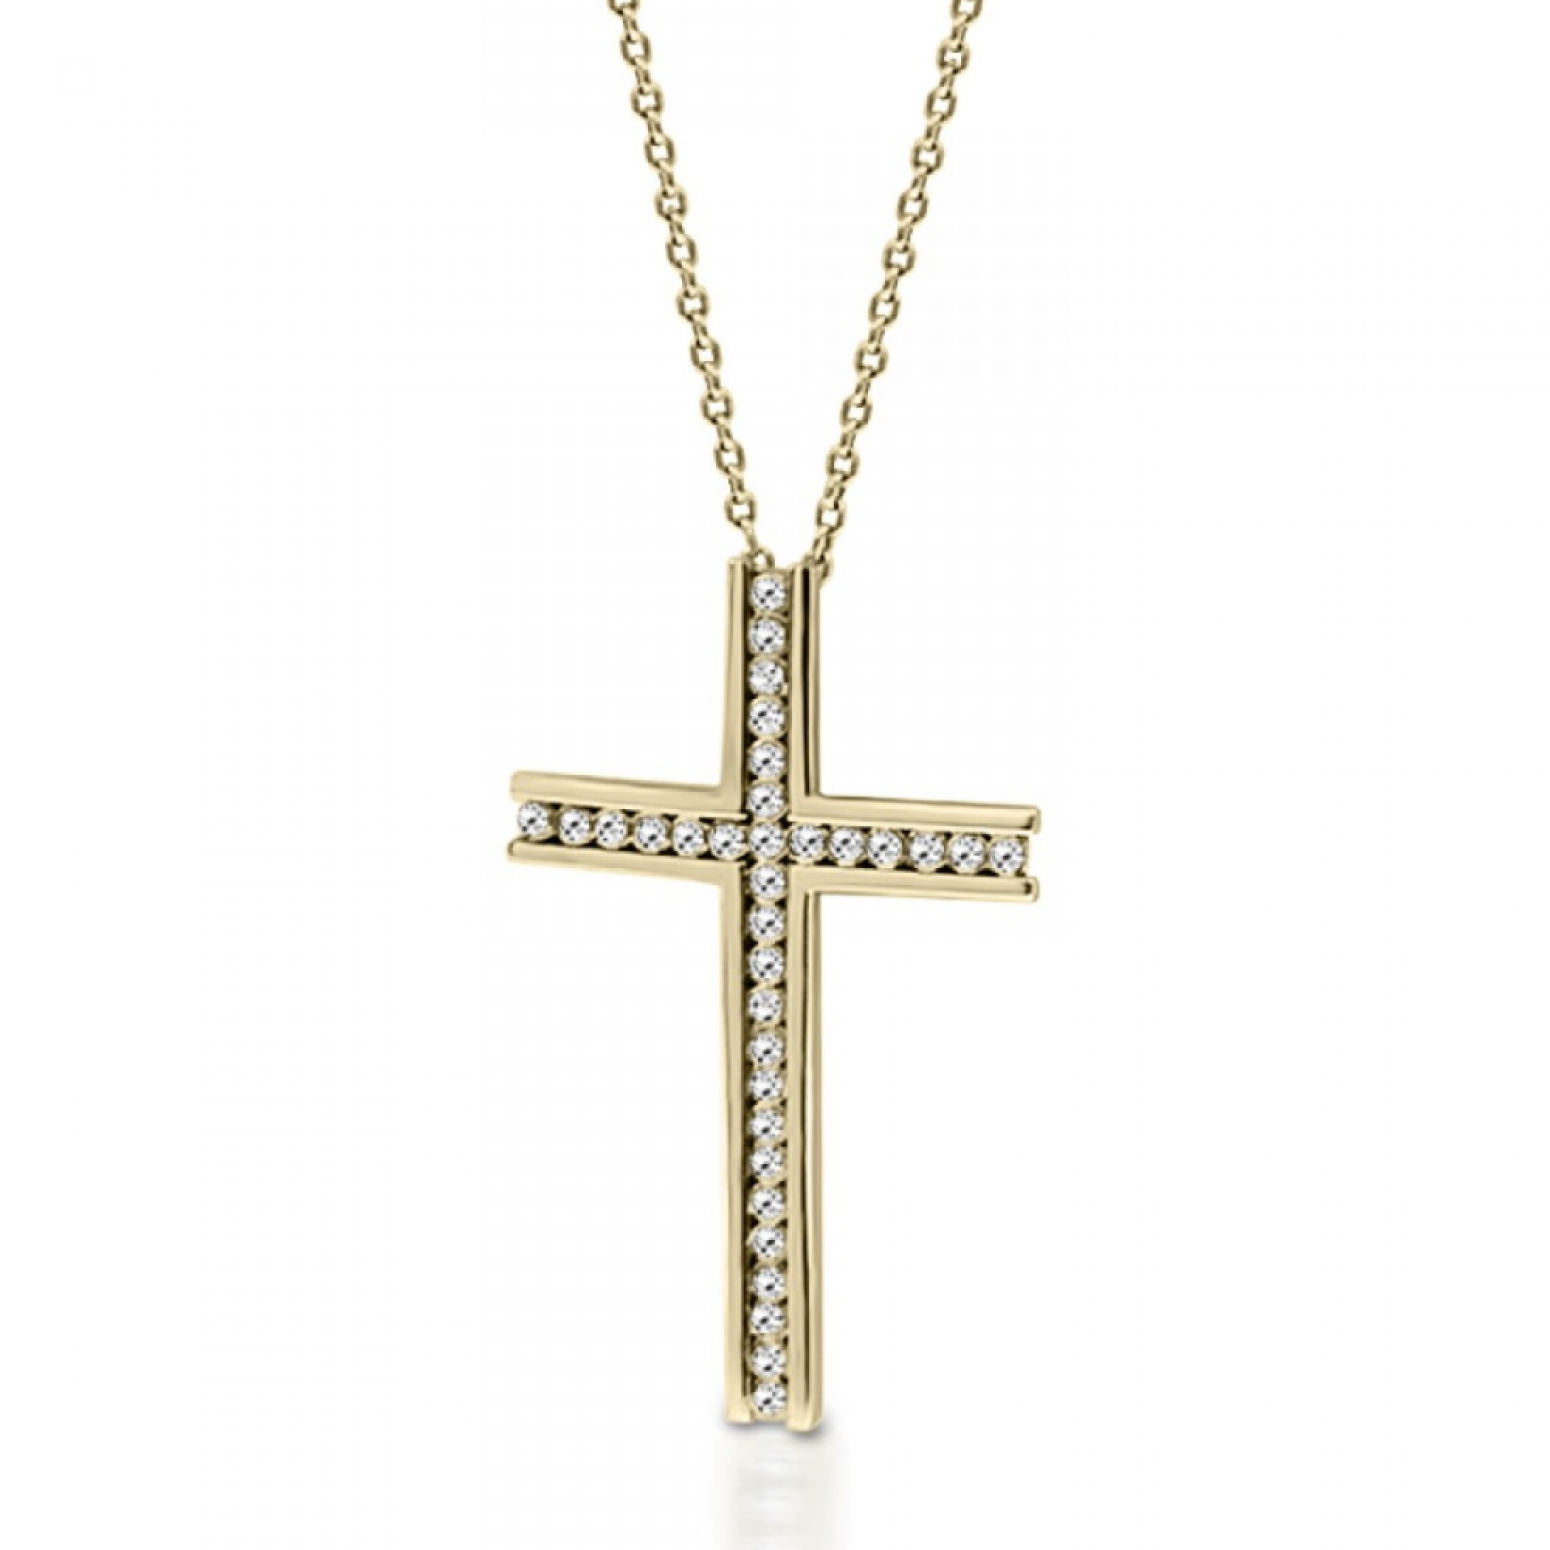 Βαπτιστικός σταυρός με αλυσίδα Κ18 χρυσό με διαμάντια 0.06ct, VS2, H ko5167 ΣΤΑΥΡΟΙ Κοσμηματα - chrilia.gr